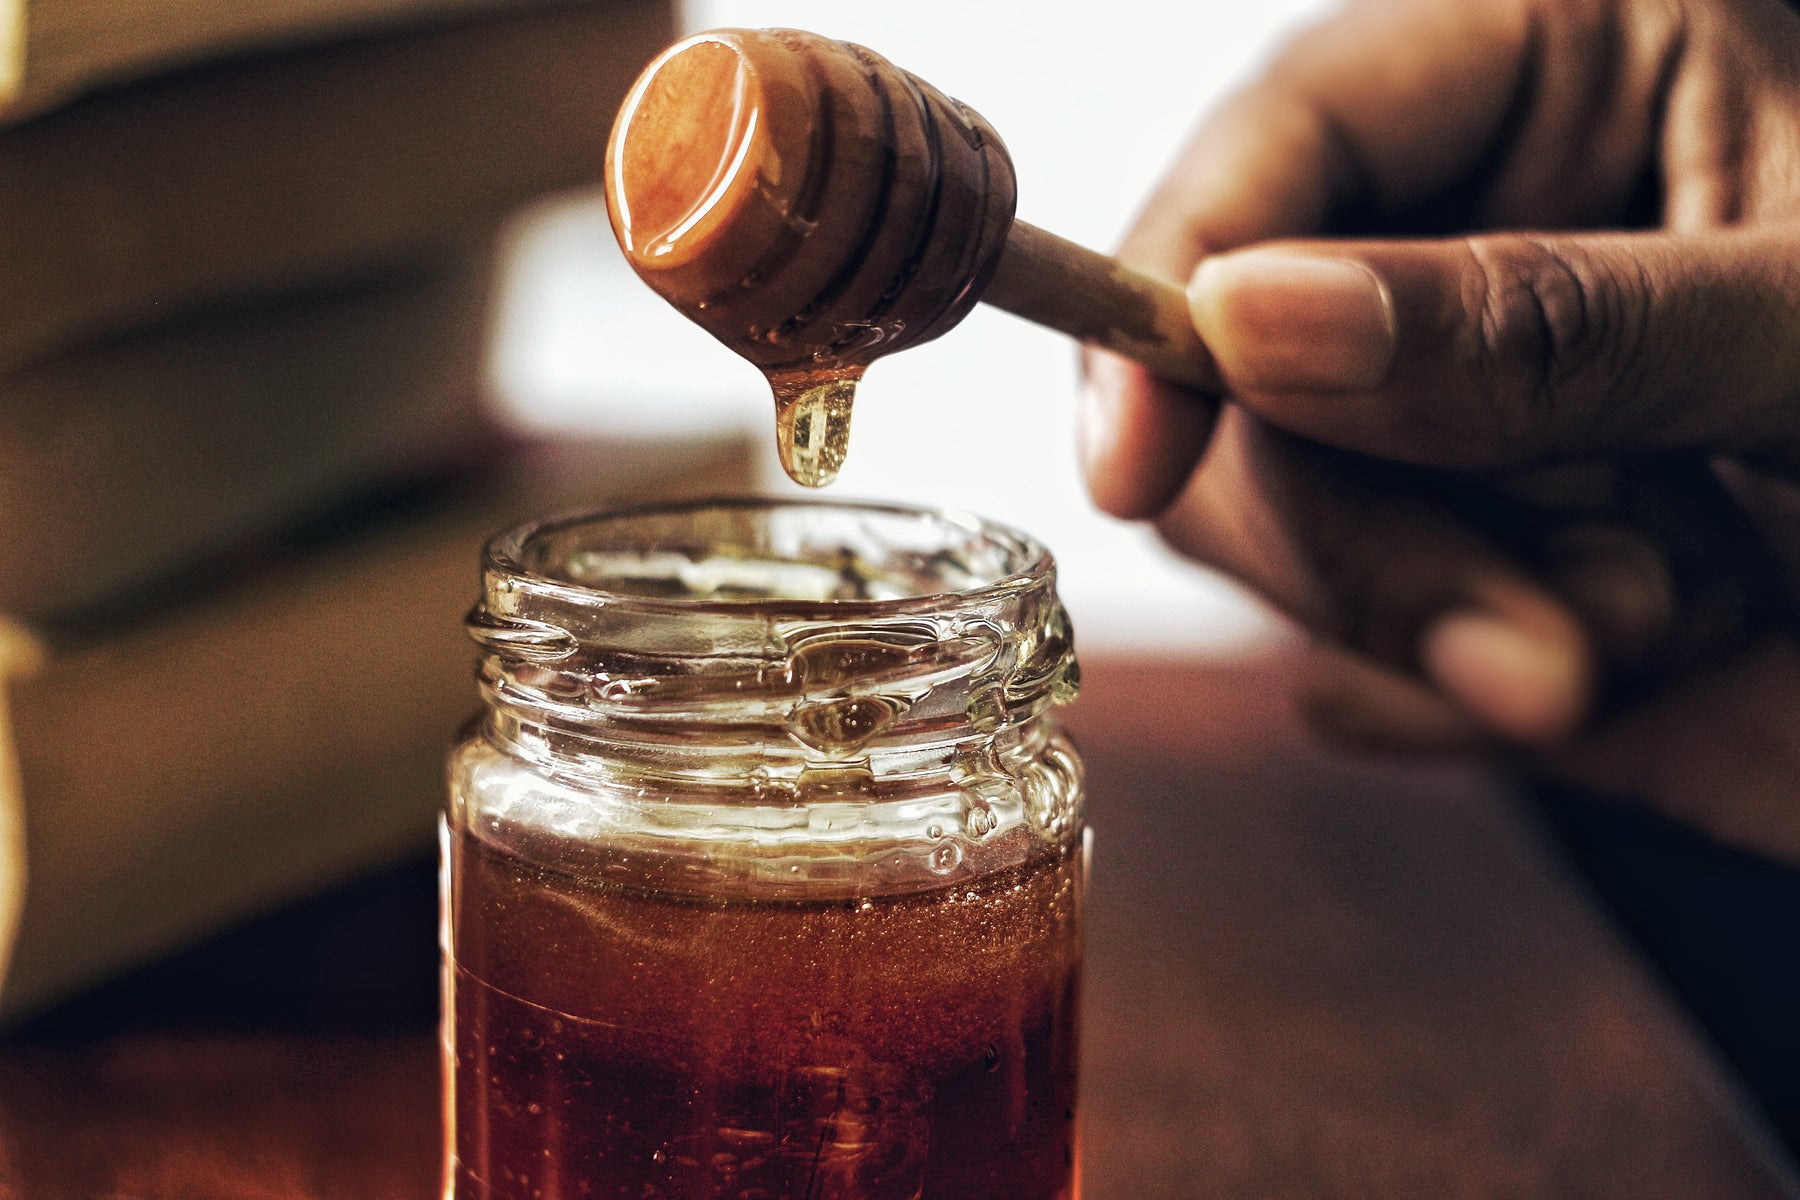 ¿Esta miel si es pura de verdad?